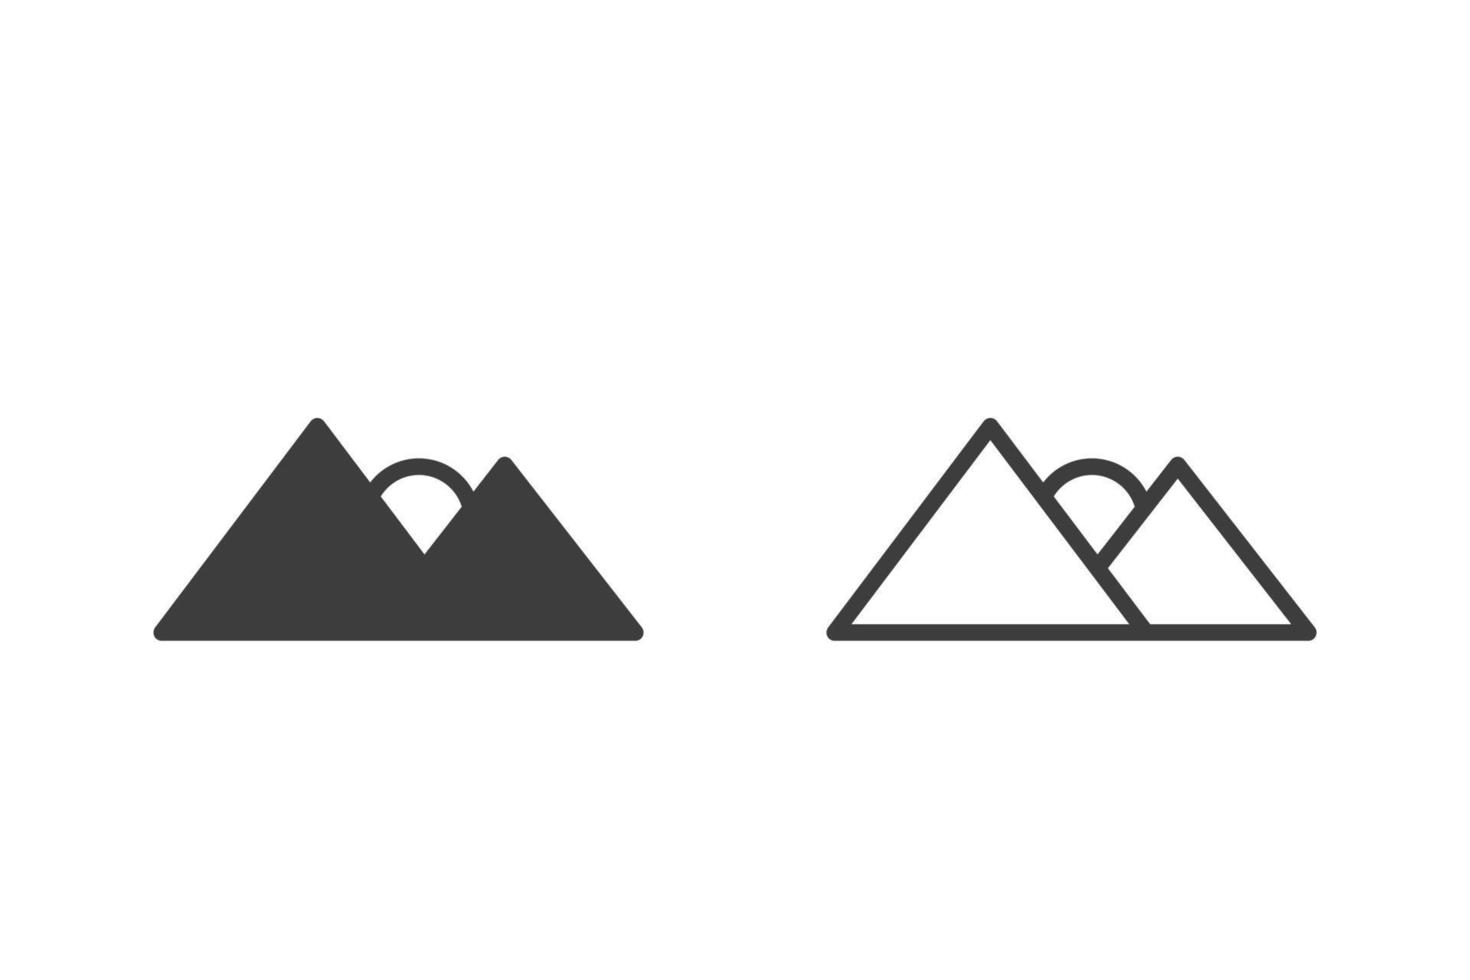 conception de style glyphe d'illustration vectorielle plate montagne et soleil avec 2 icônes de style noir et blanc. isolé sur fond blanc. icônes de voyage. vecteur